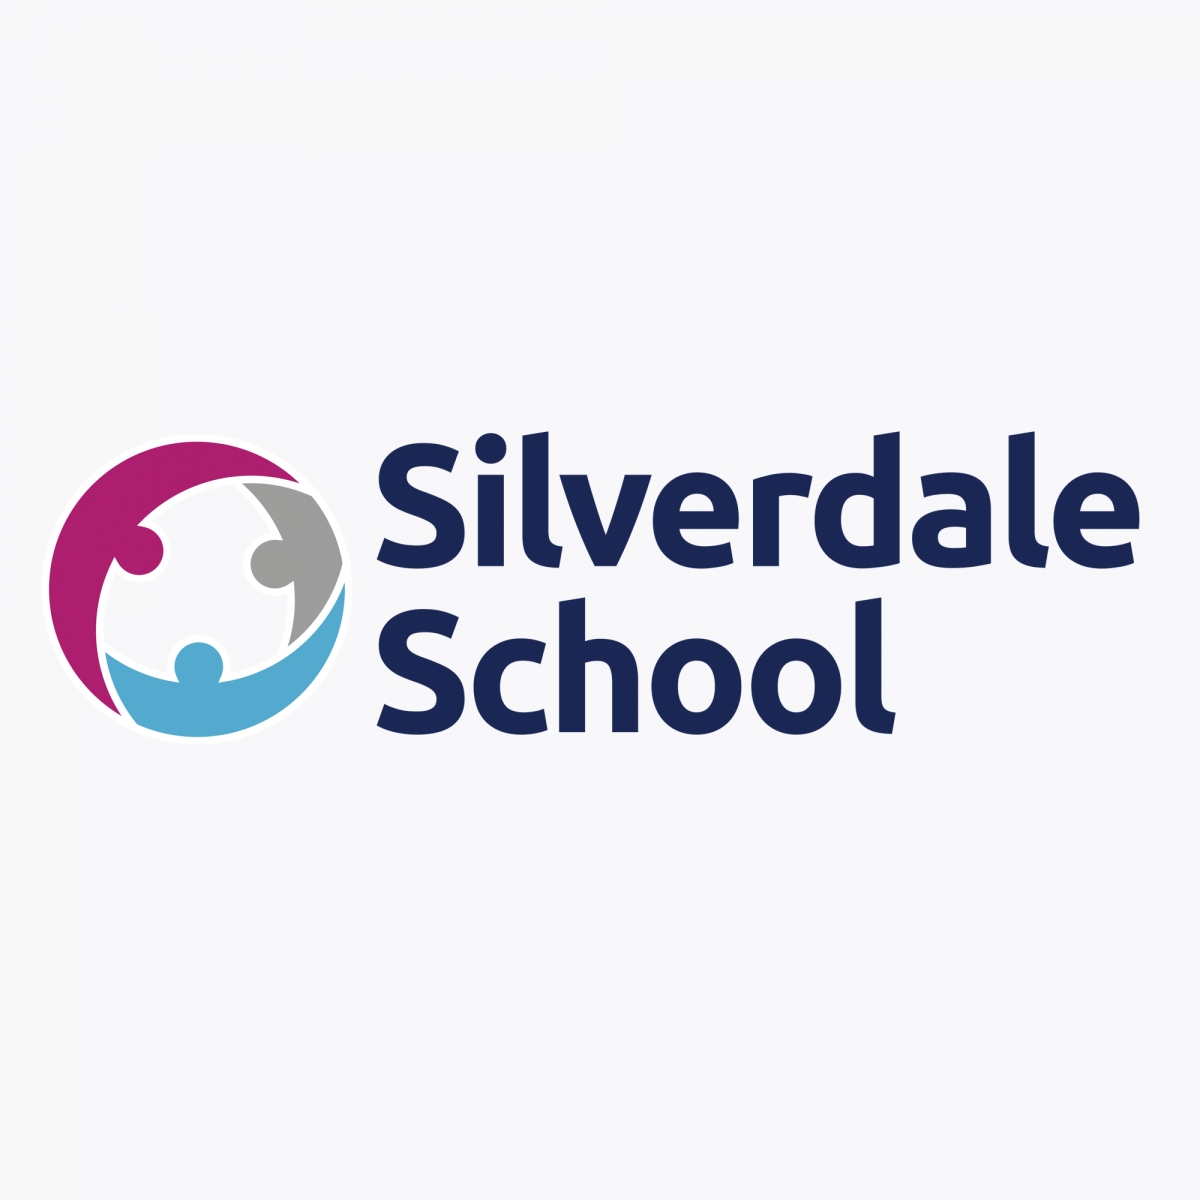 Silverdale School校徽